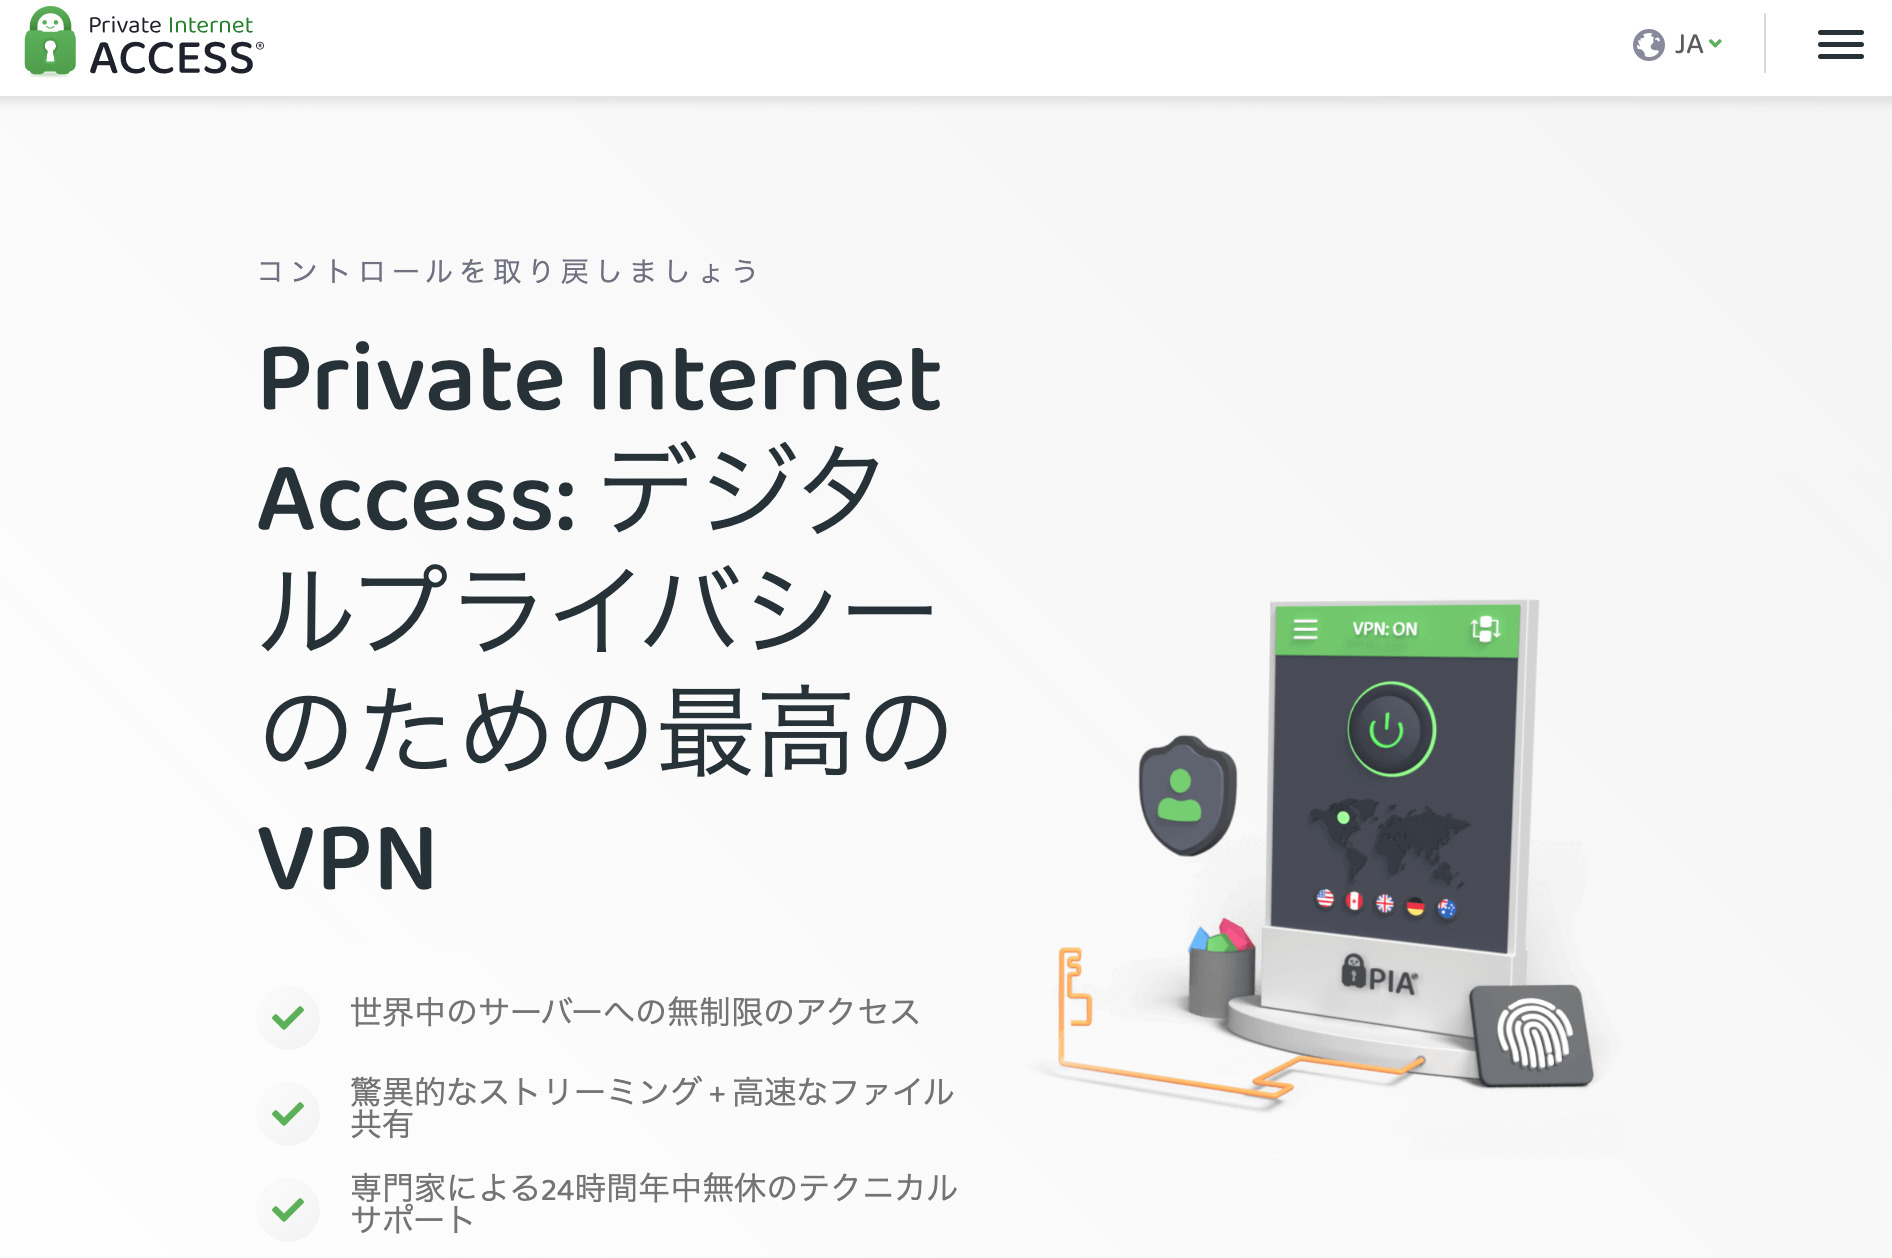 Private Internet Access(プライベートインターネットアクセス)とは